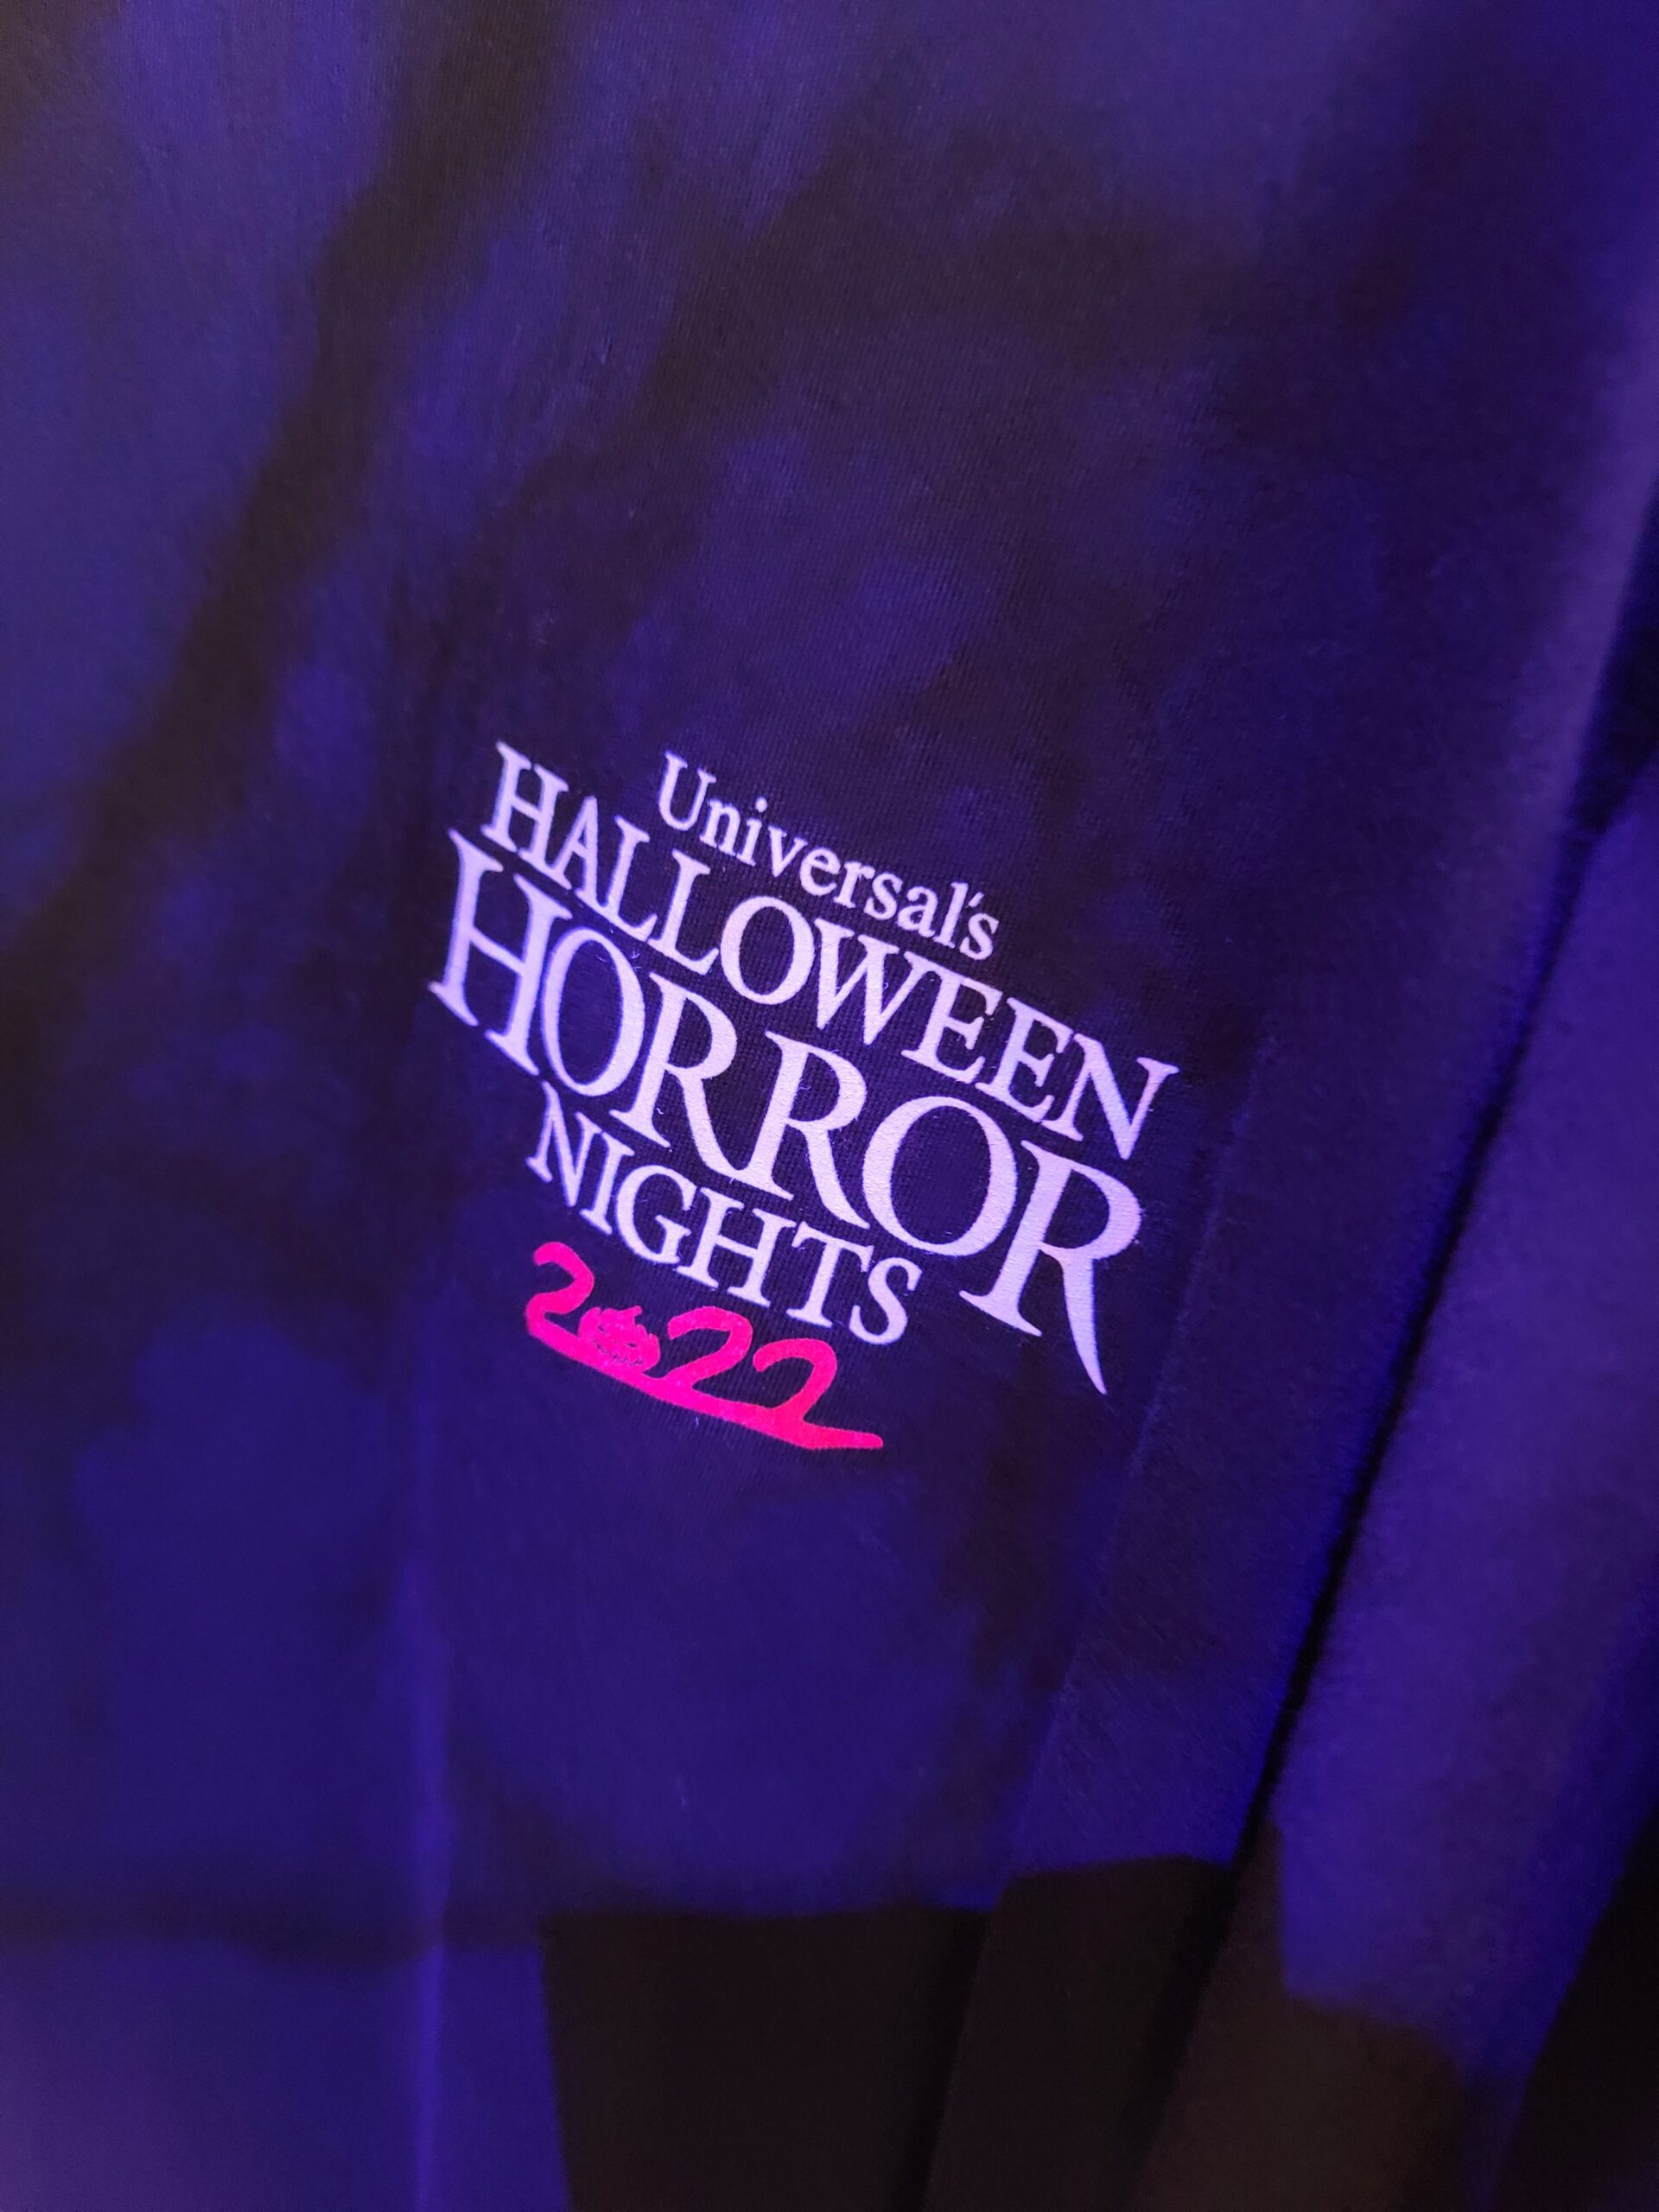 Universal Studios - Halloween Horror Nights Preview